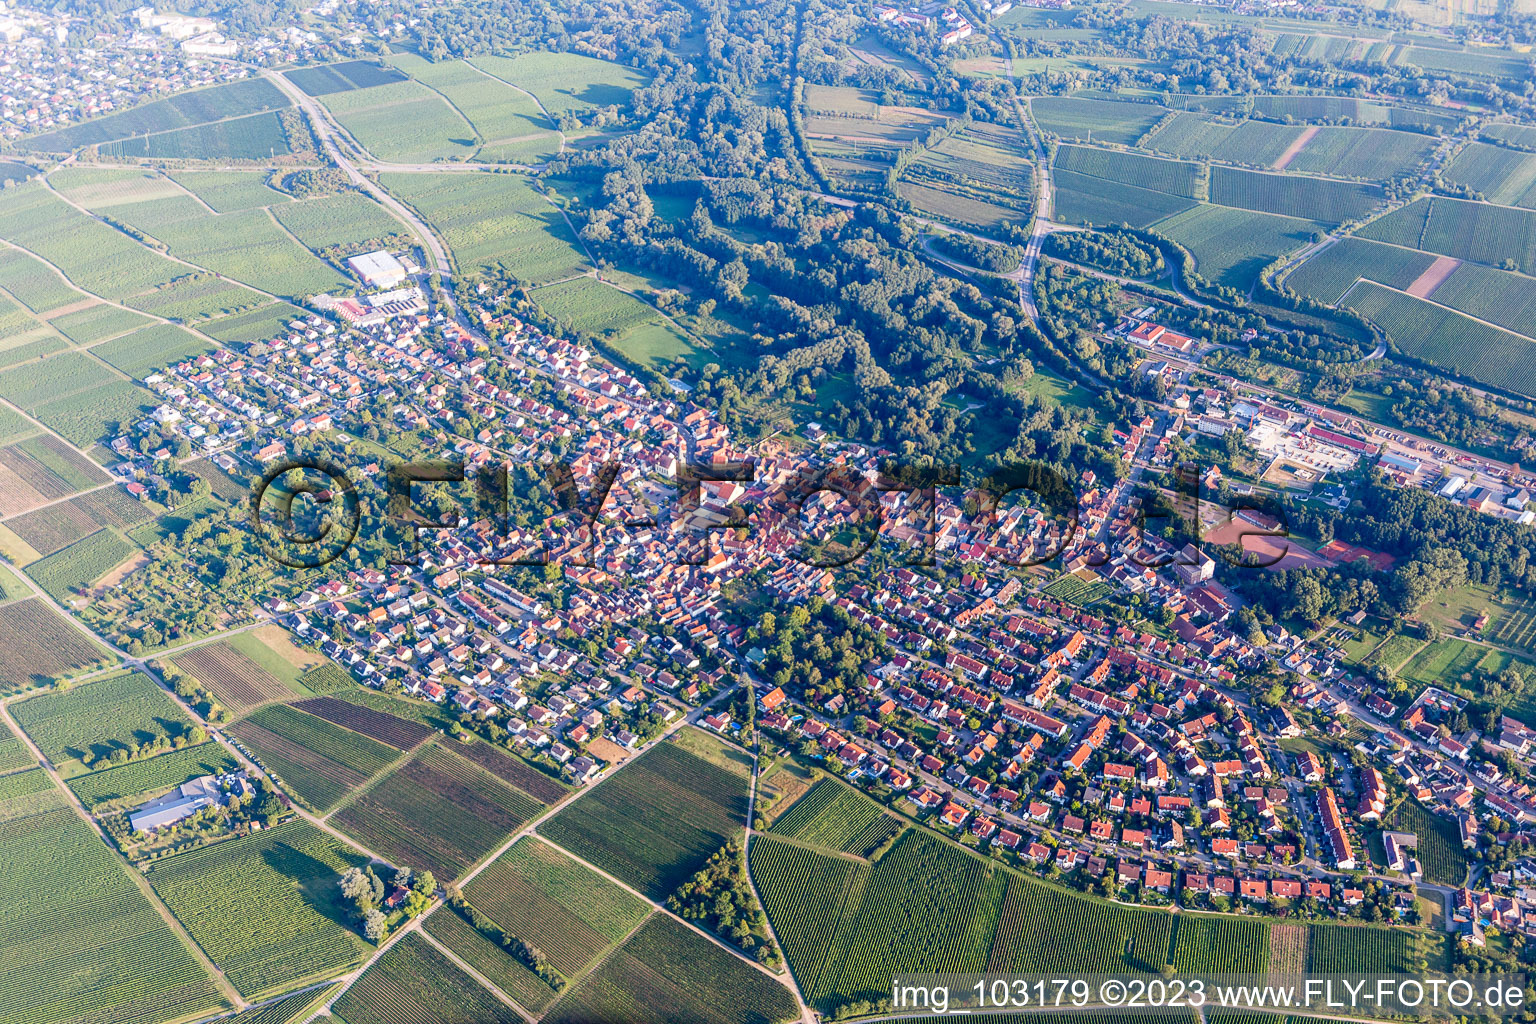 Ortsteil Godramstein in Landau in der Pfalz im Bundesland Rheinland-Pfalz, Deutschland aus der Luft betrachtet